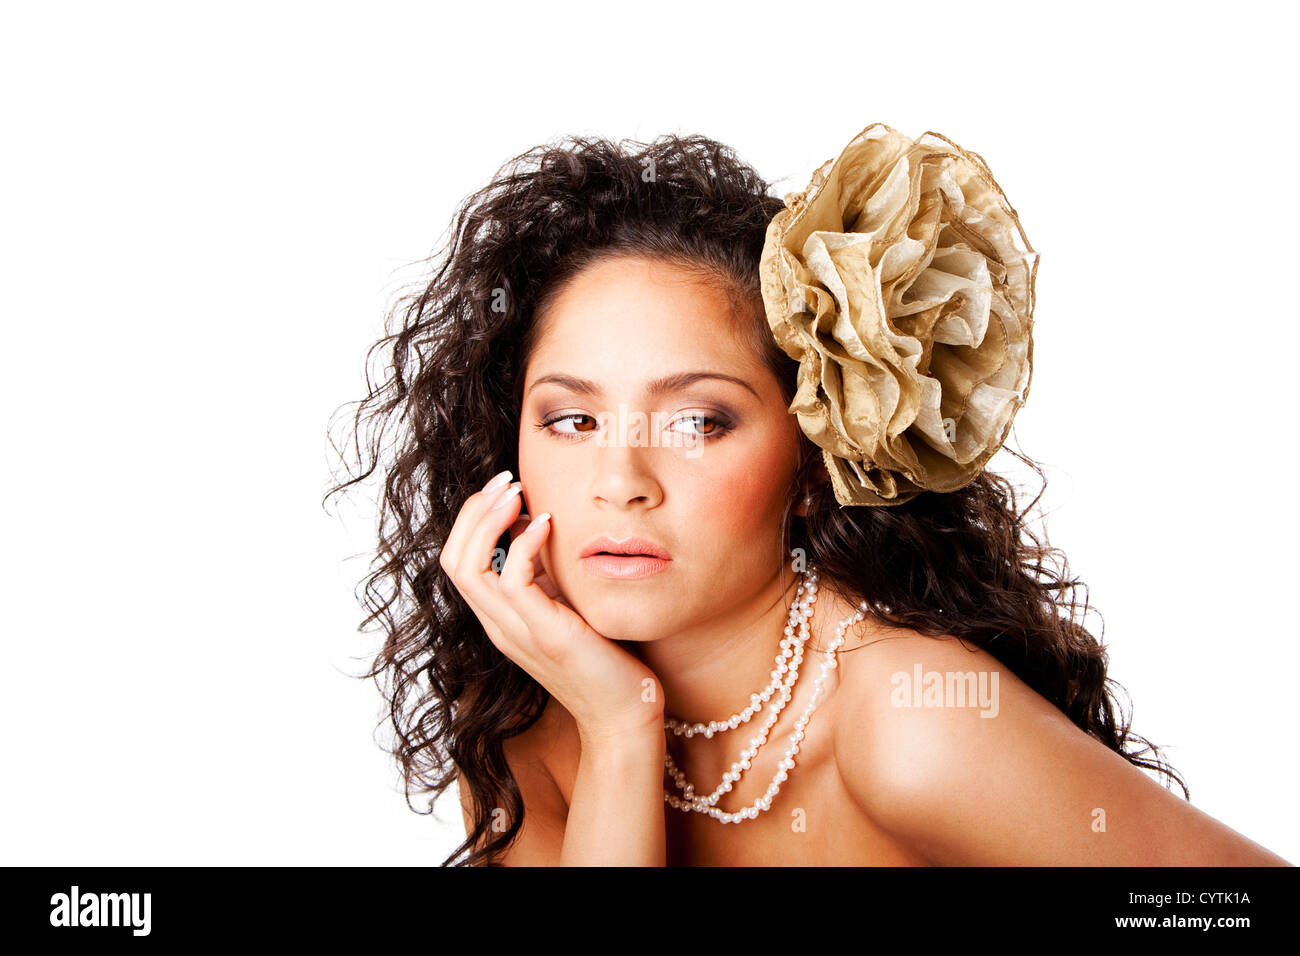 Hermoso rostro de una mujer hispana con caucásicos curtida piel clara, vistiendo un collar de perlas y una falsa flor en el pelo rizado Foto de stock